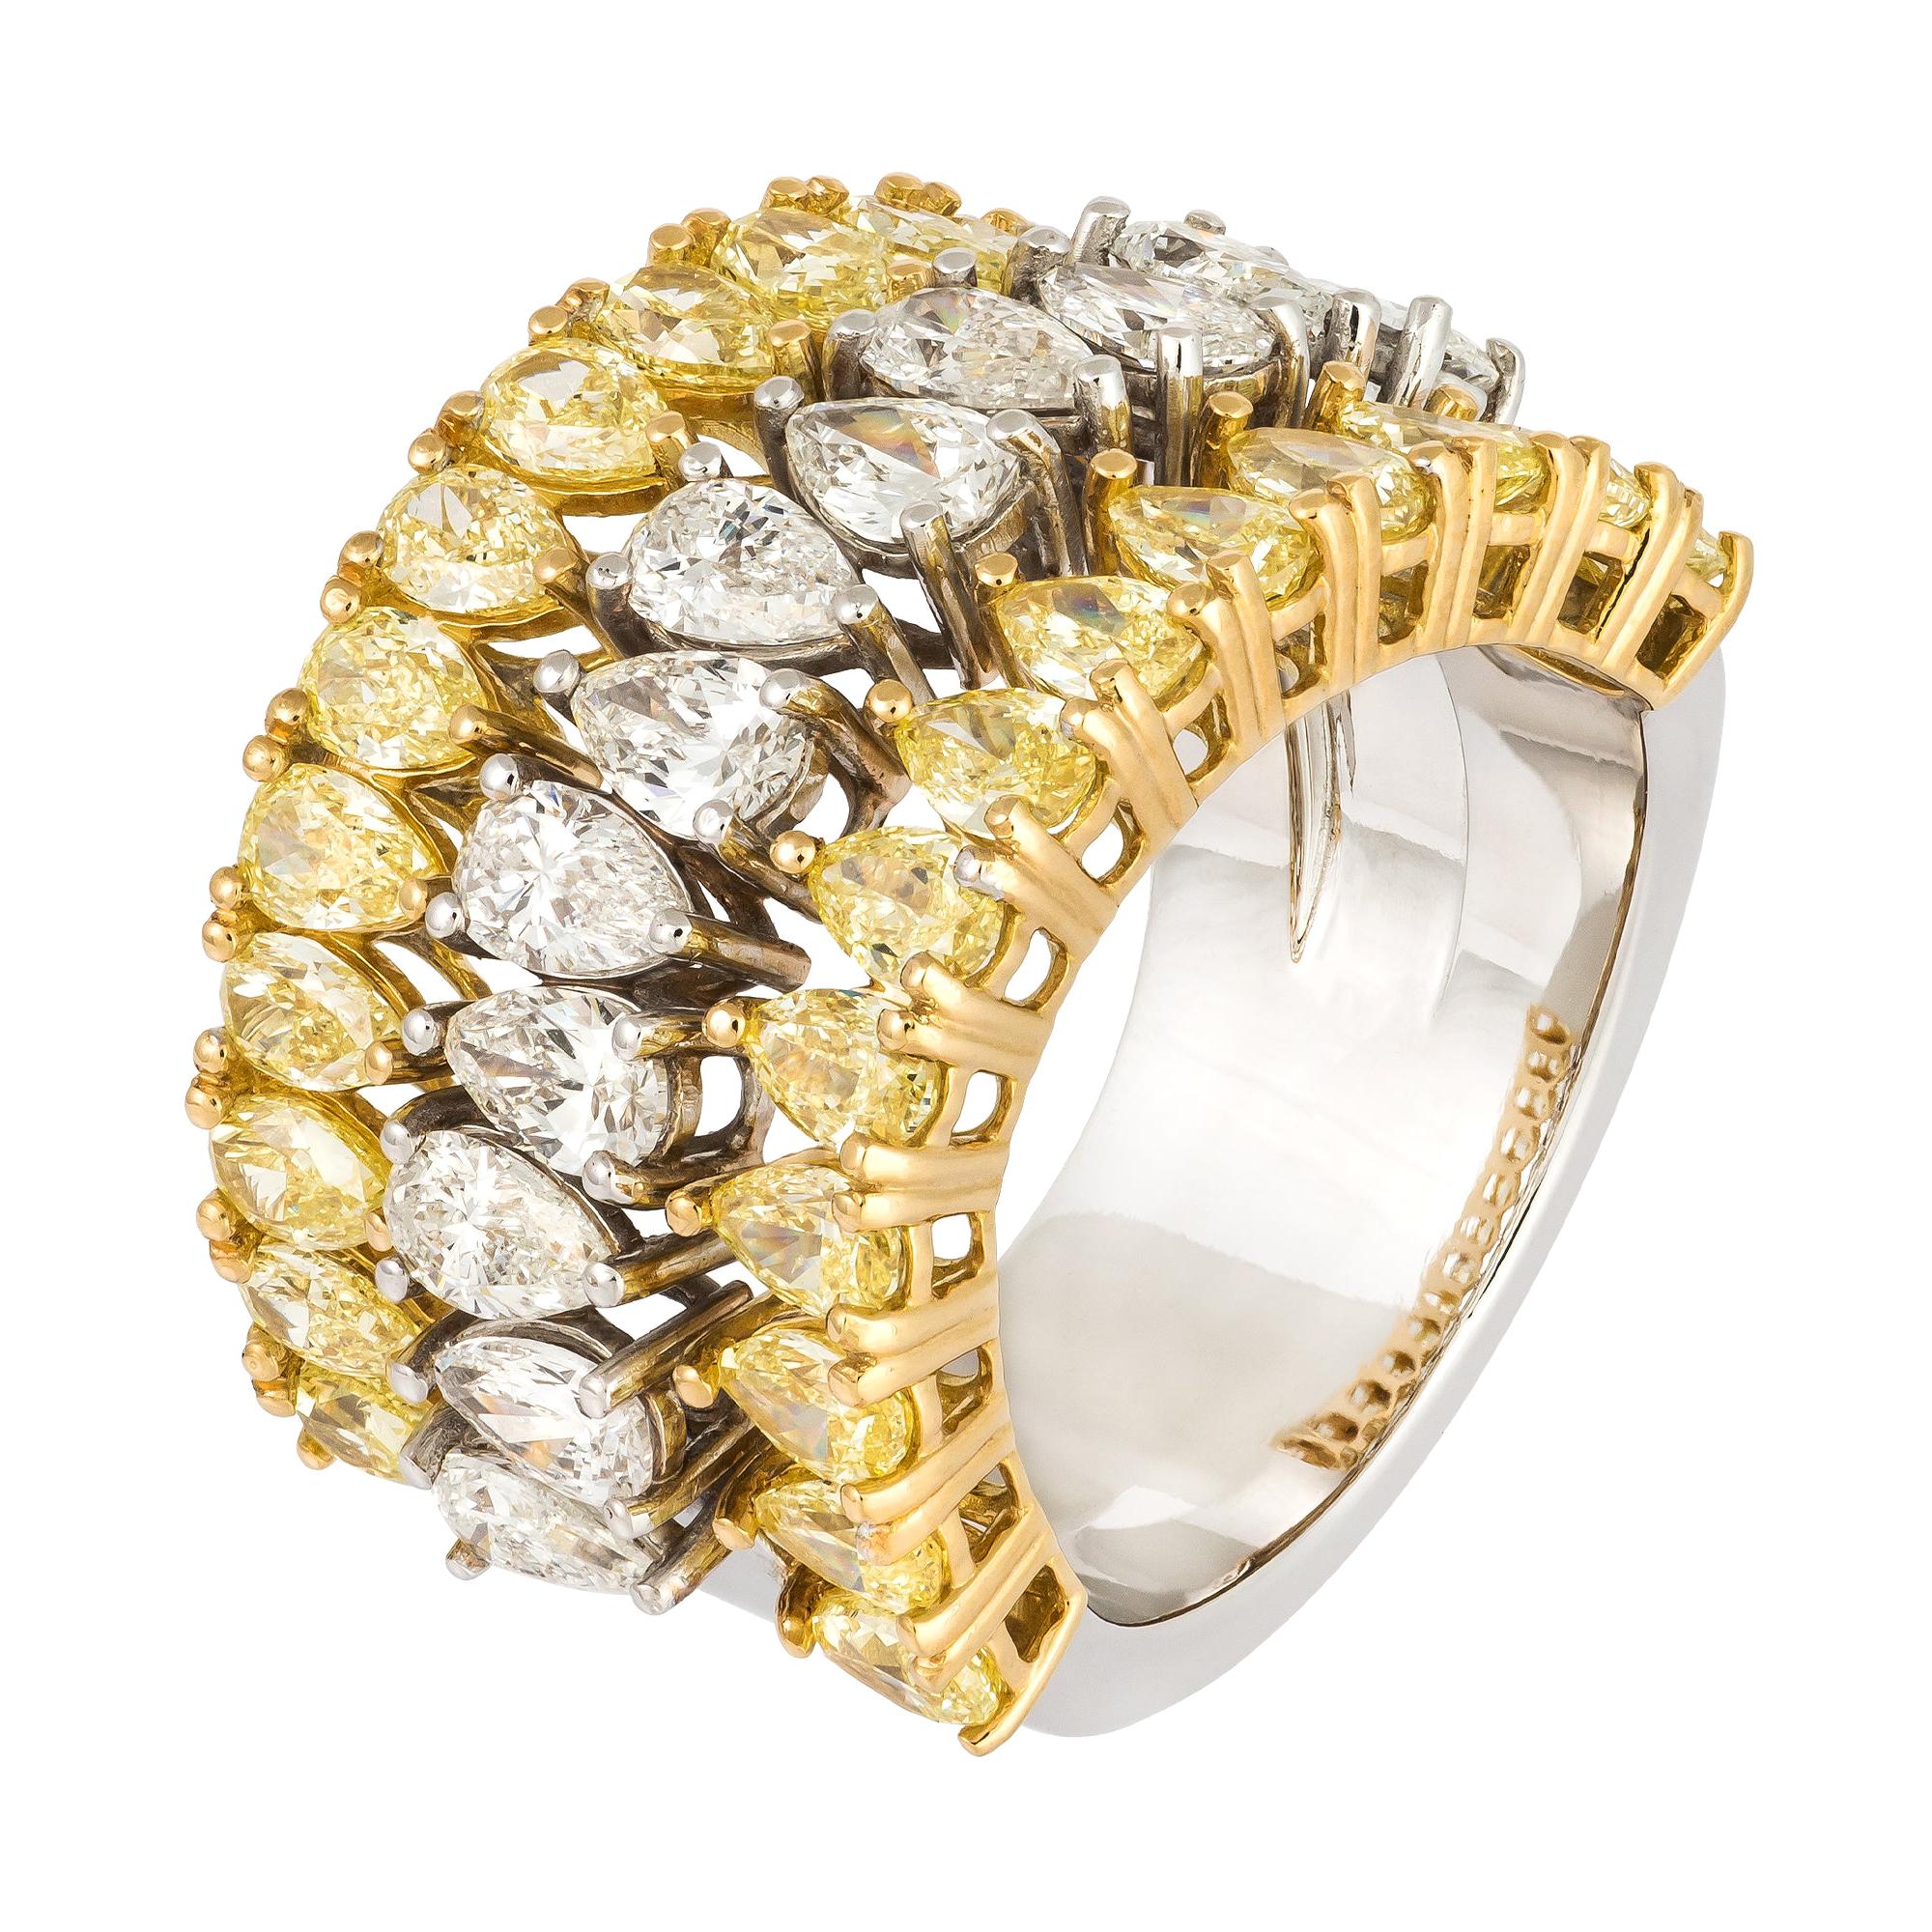 Italian Yellow White Diamond Yellow Gold Band 18K Ring for Her